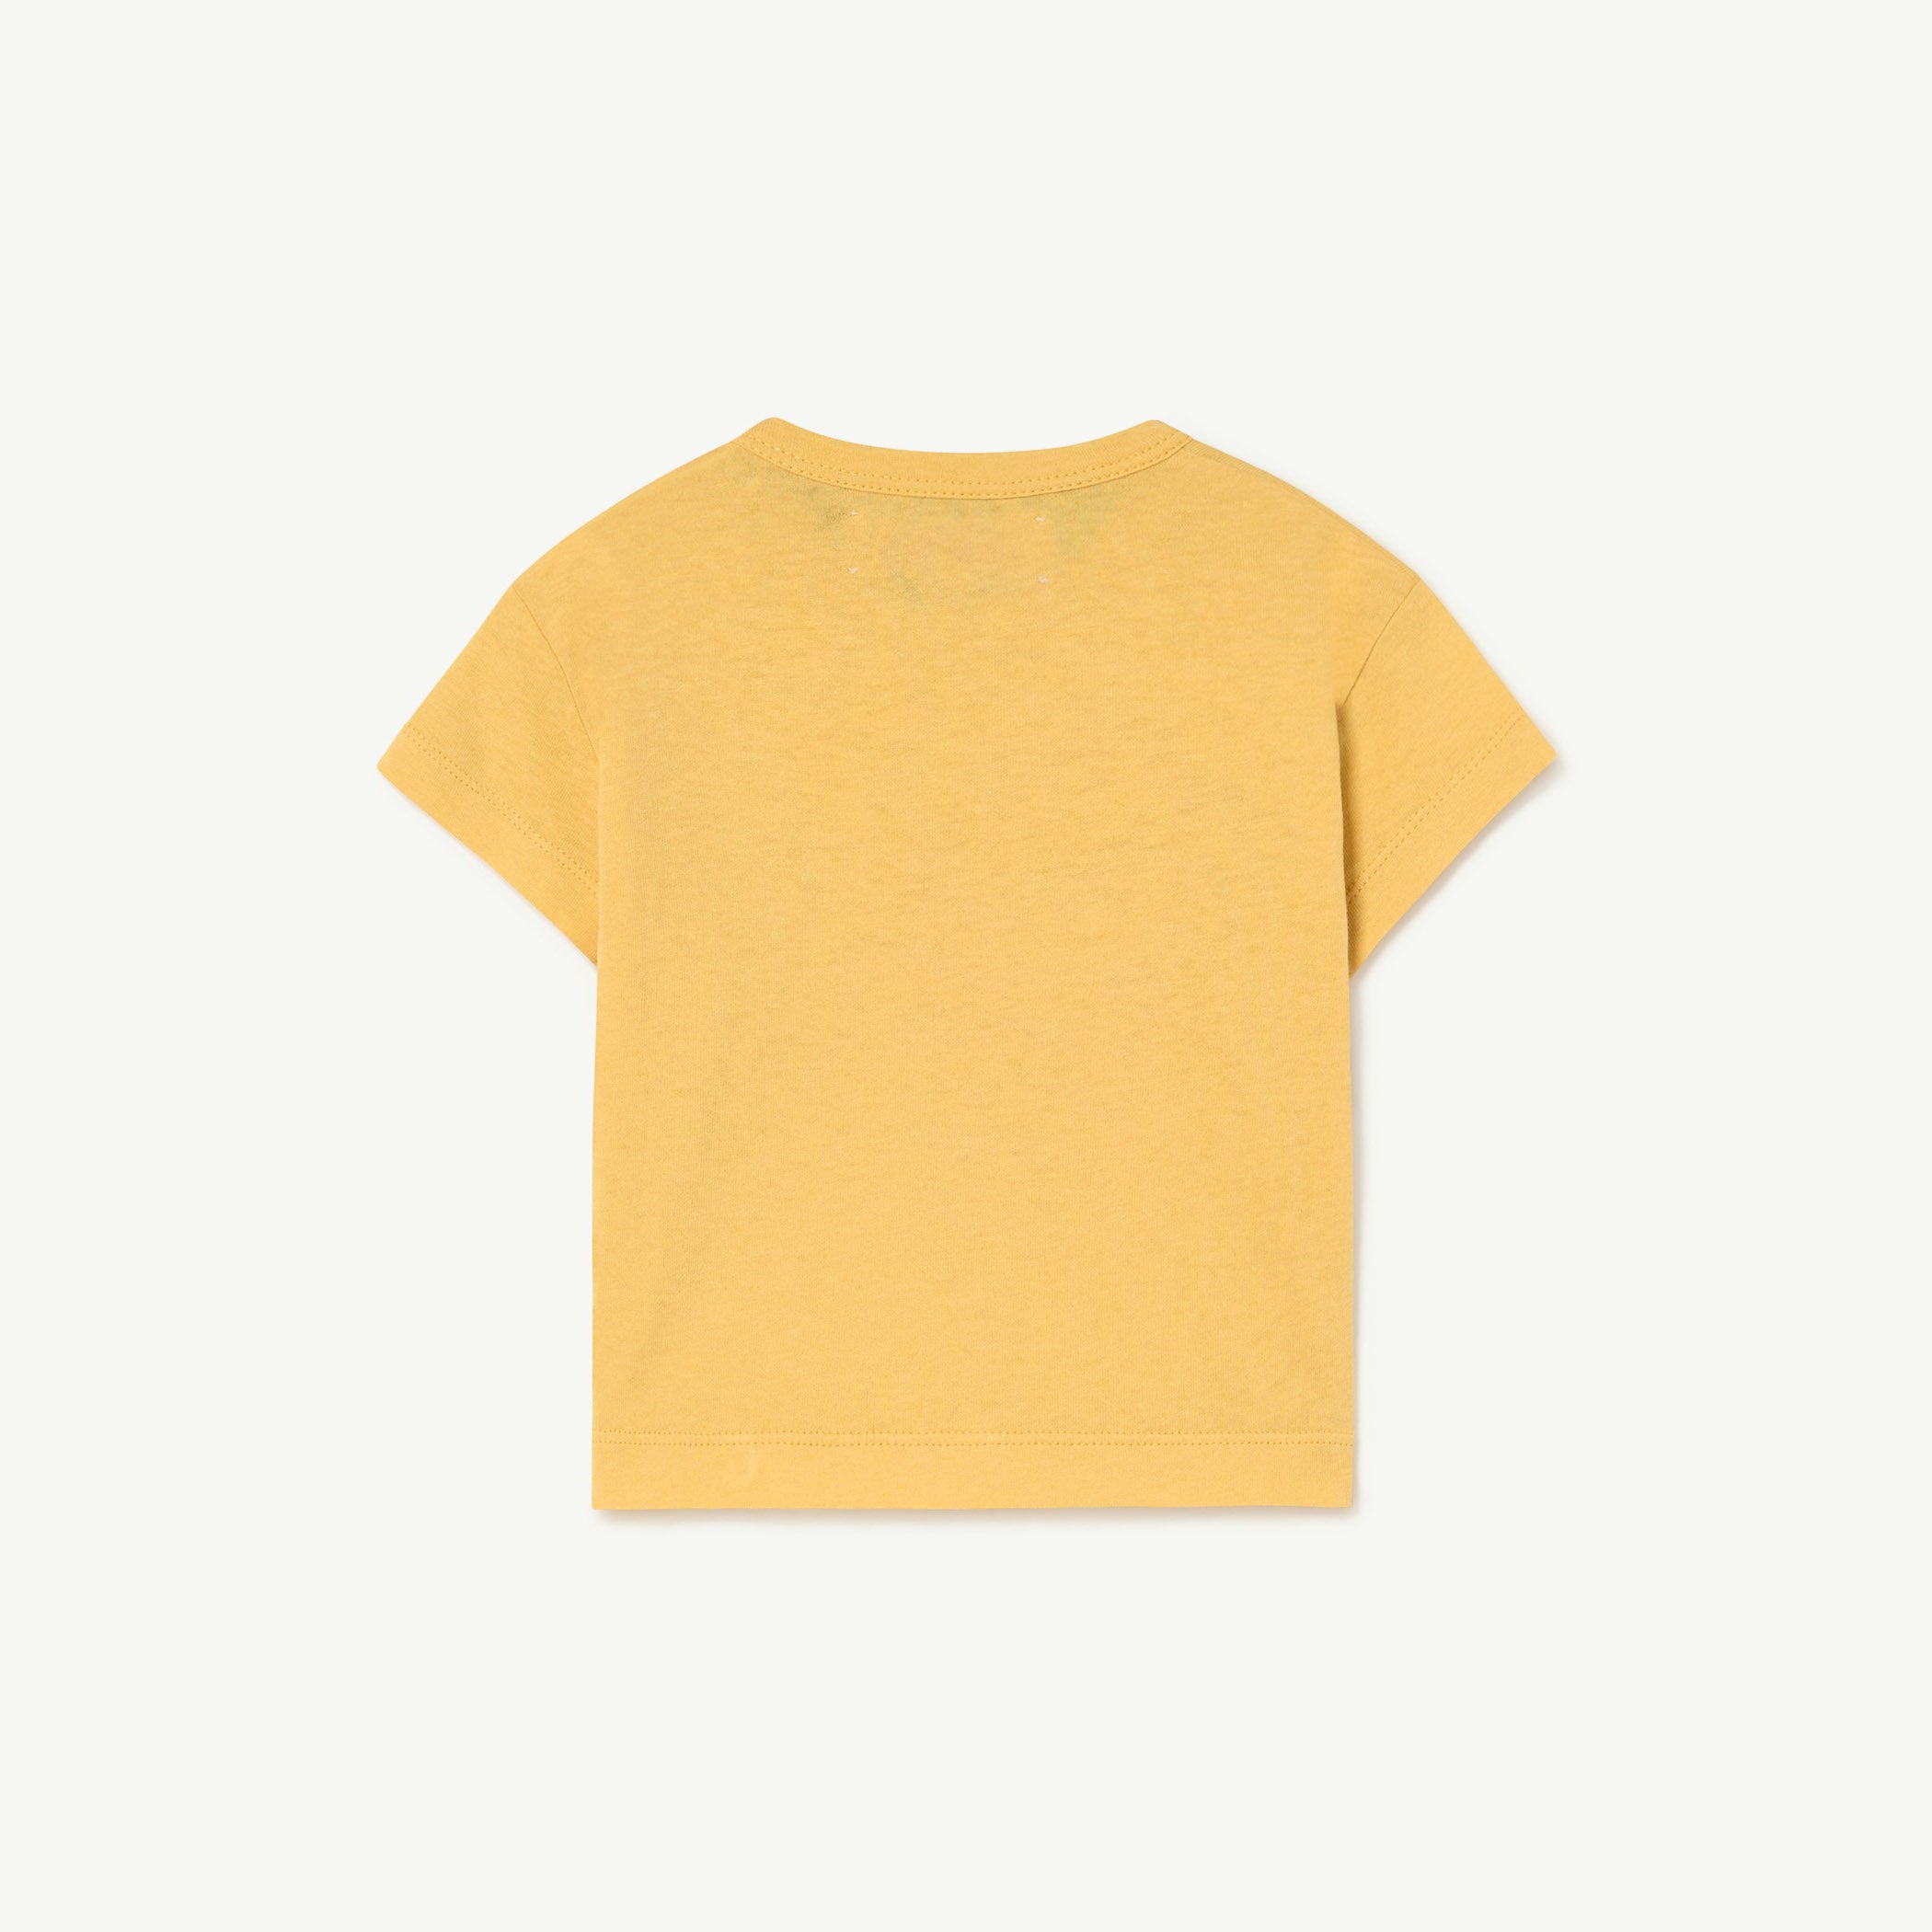 The Animals Observatory Rooster Baby T-Shirt Yellow Sun | BIEN BIEN bienbienshop.com